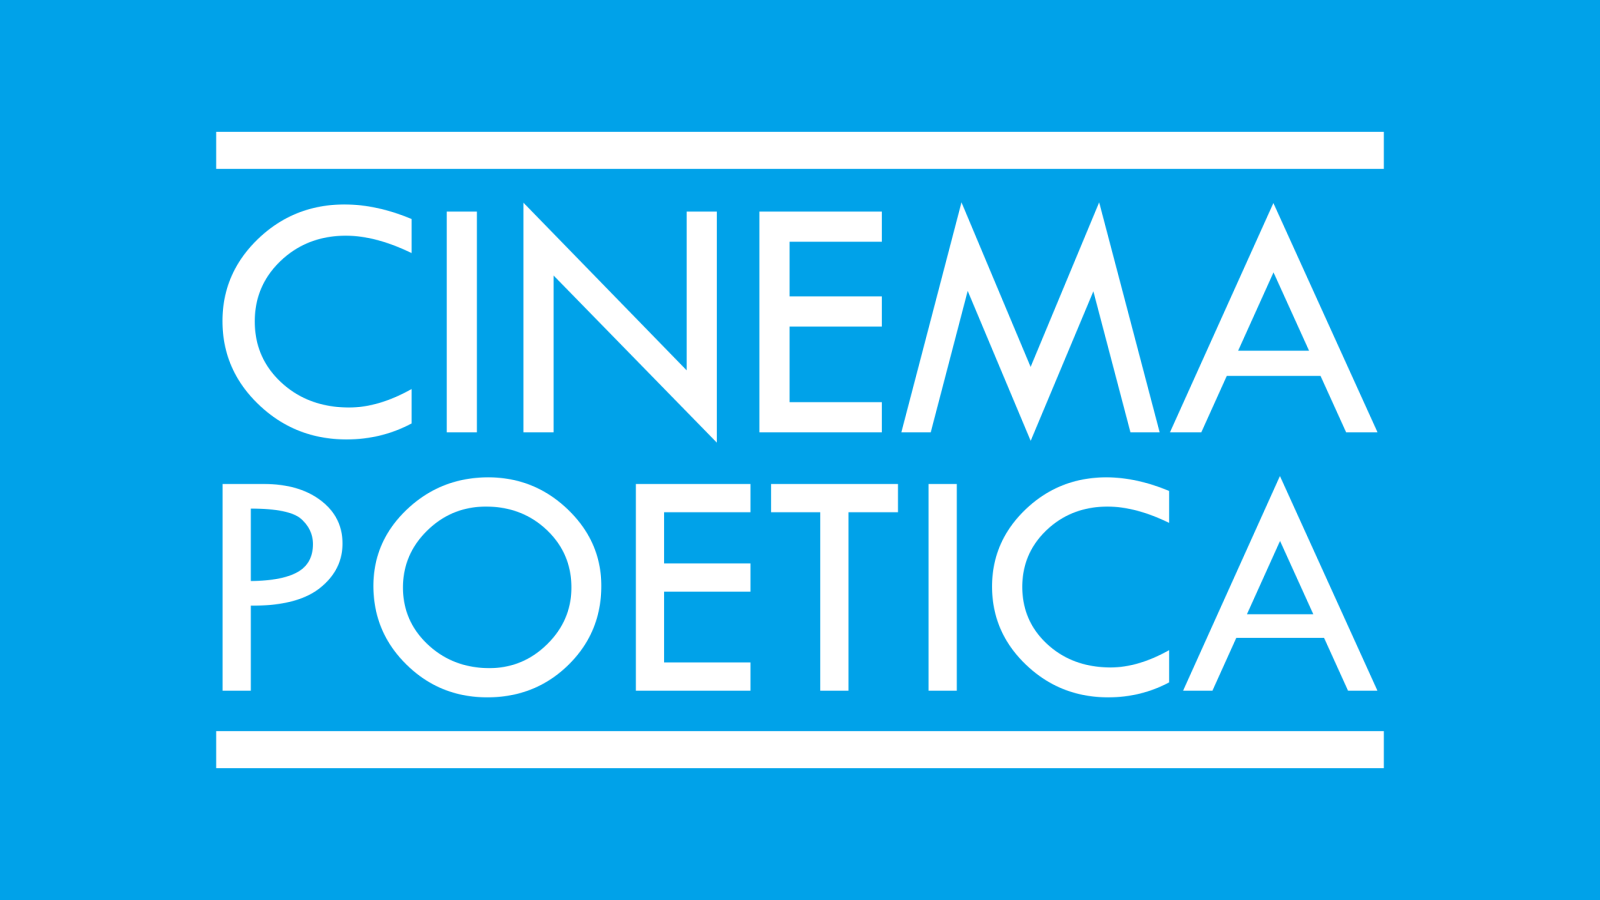 Toko Cinema Poetica